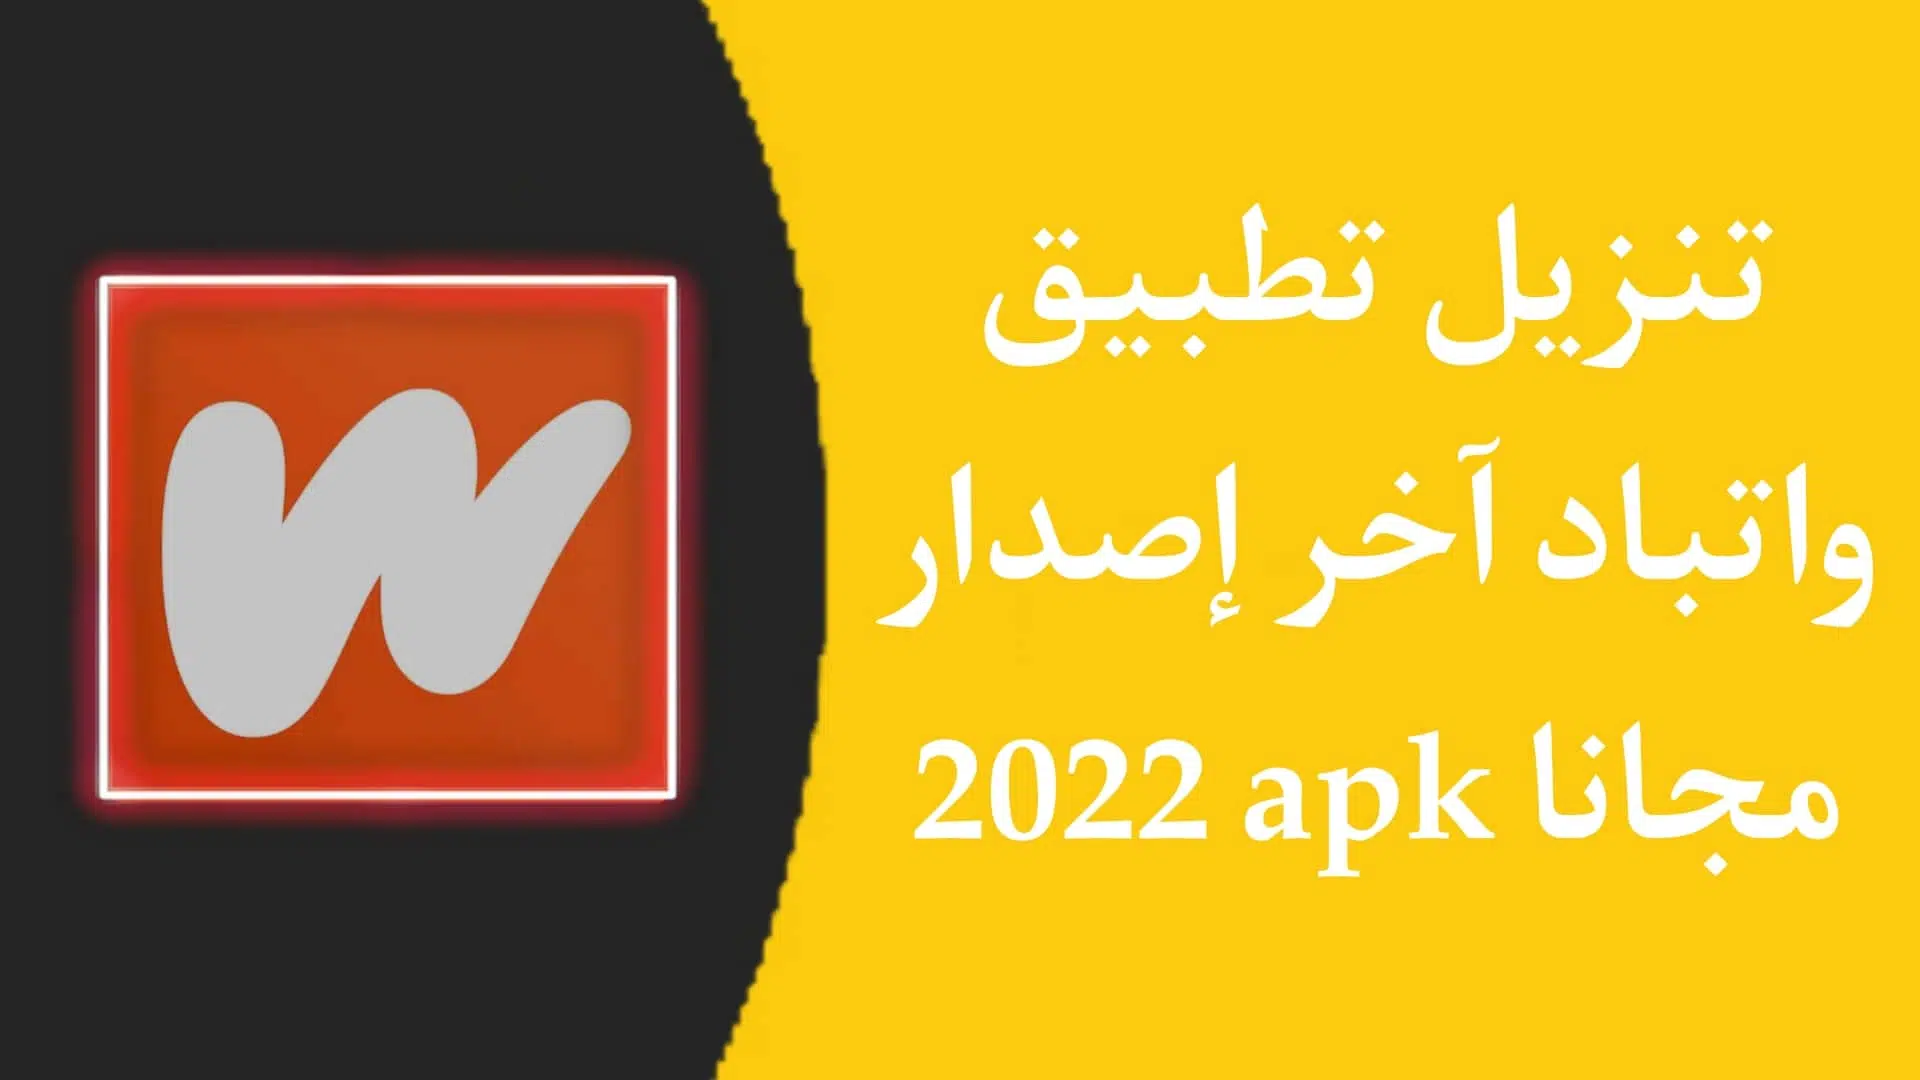 تنزيل تطبيق واتباد Wattpad apk اخر اصدار للاندرويد 2022